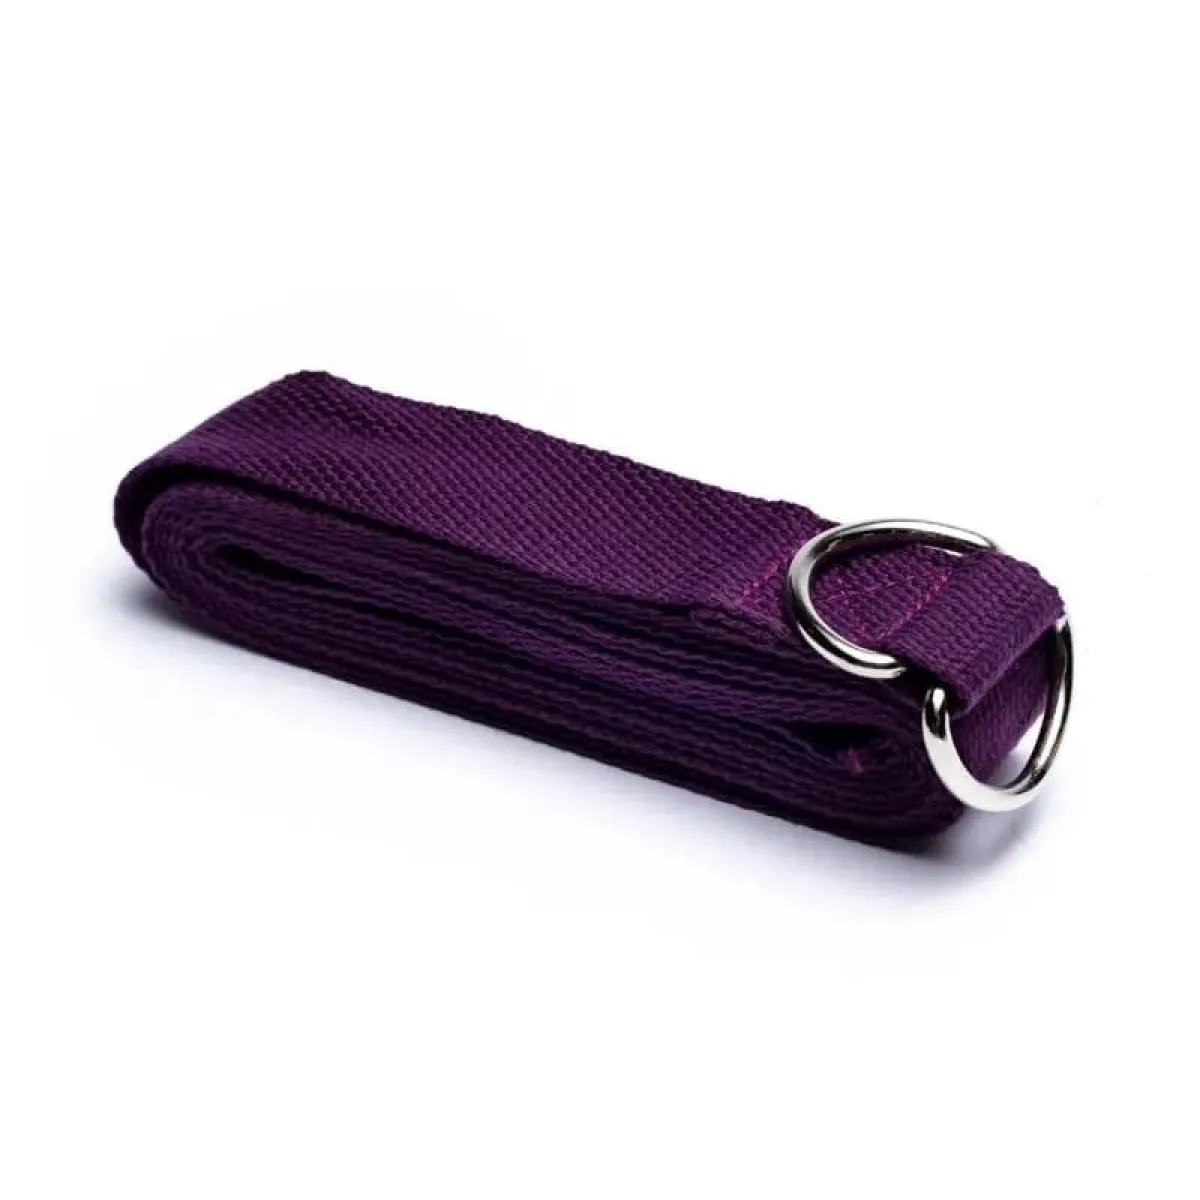 Cinturón de yoga/correa de yoga púrpura 250x3 cm